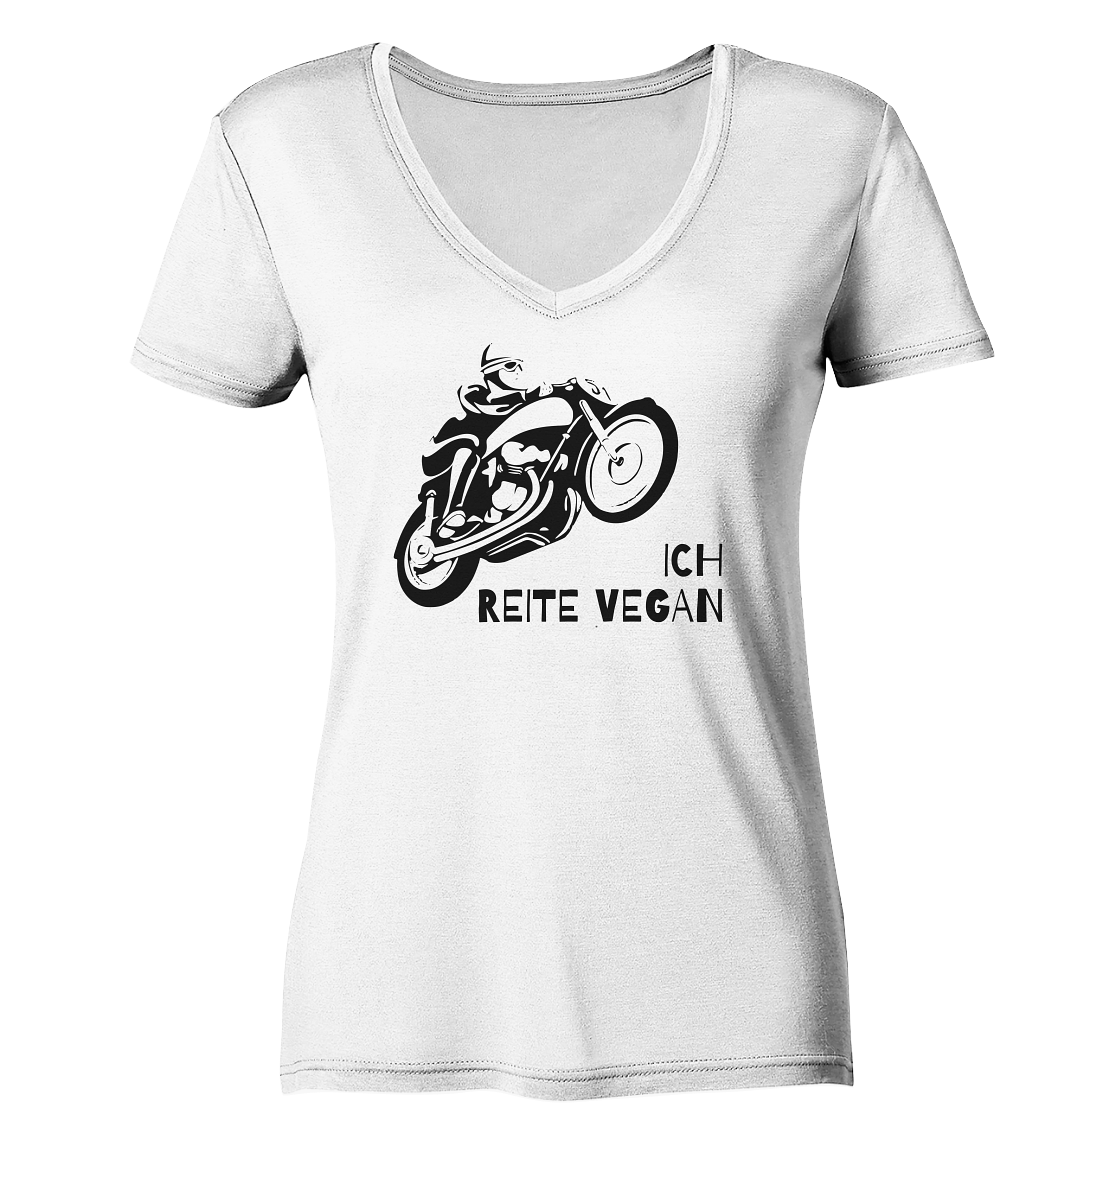 Damen-T-Shirt, V-Ausschnitt mit Aufdruck Motorrad und Spruch "Ich reite vegan", weiß